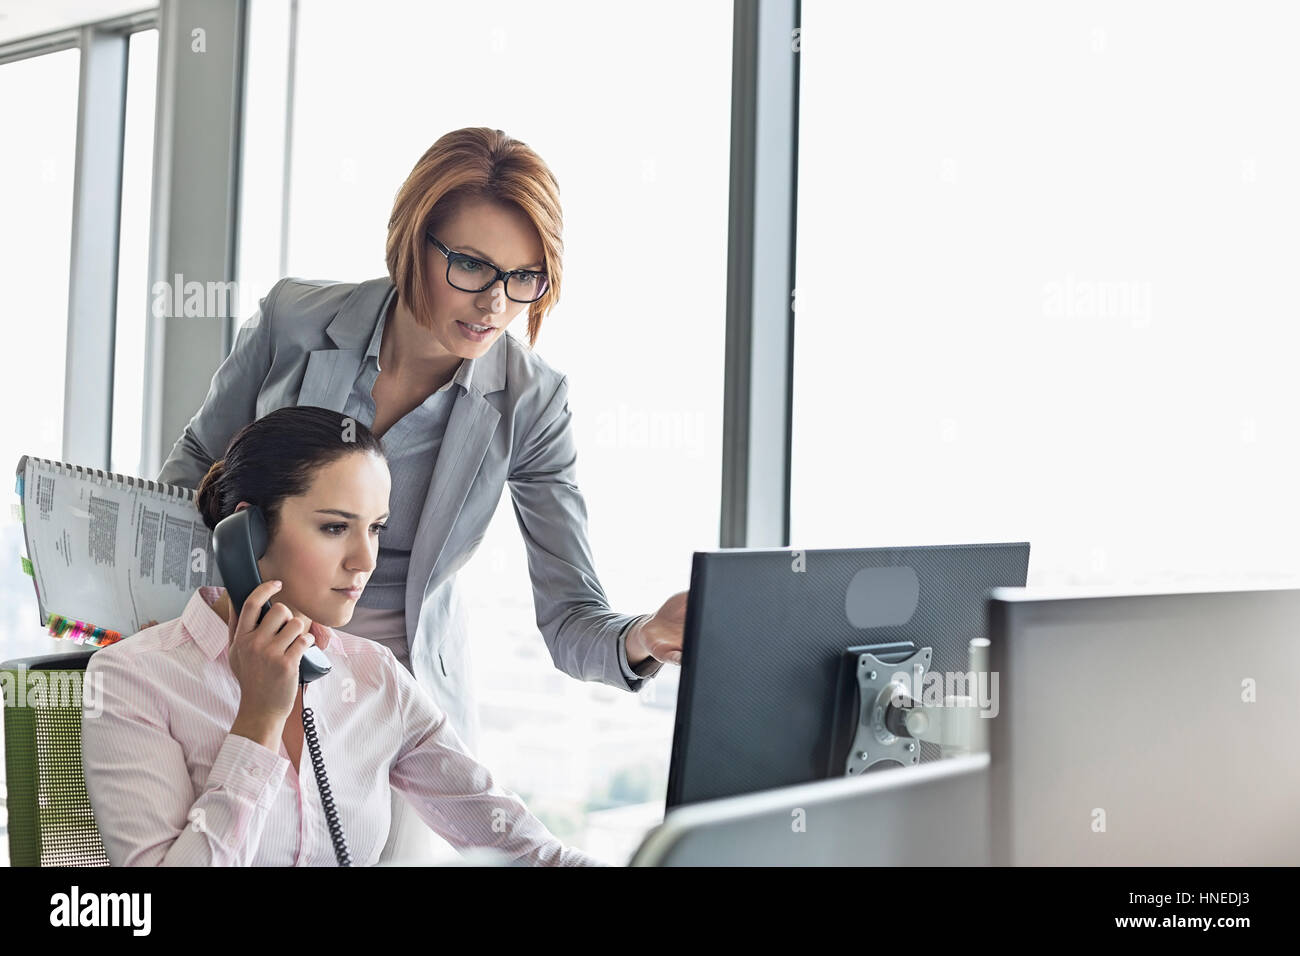 Junge Geschäftsfrau mit Festnetz-Telefon während Kollege zeigte auf Computer-Monitor im Büro Stockfoto